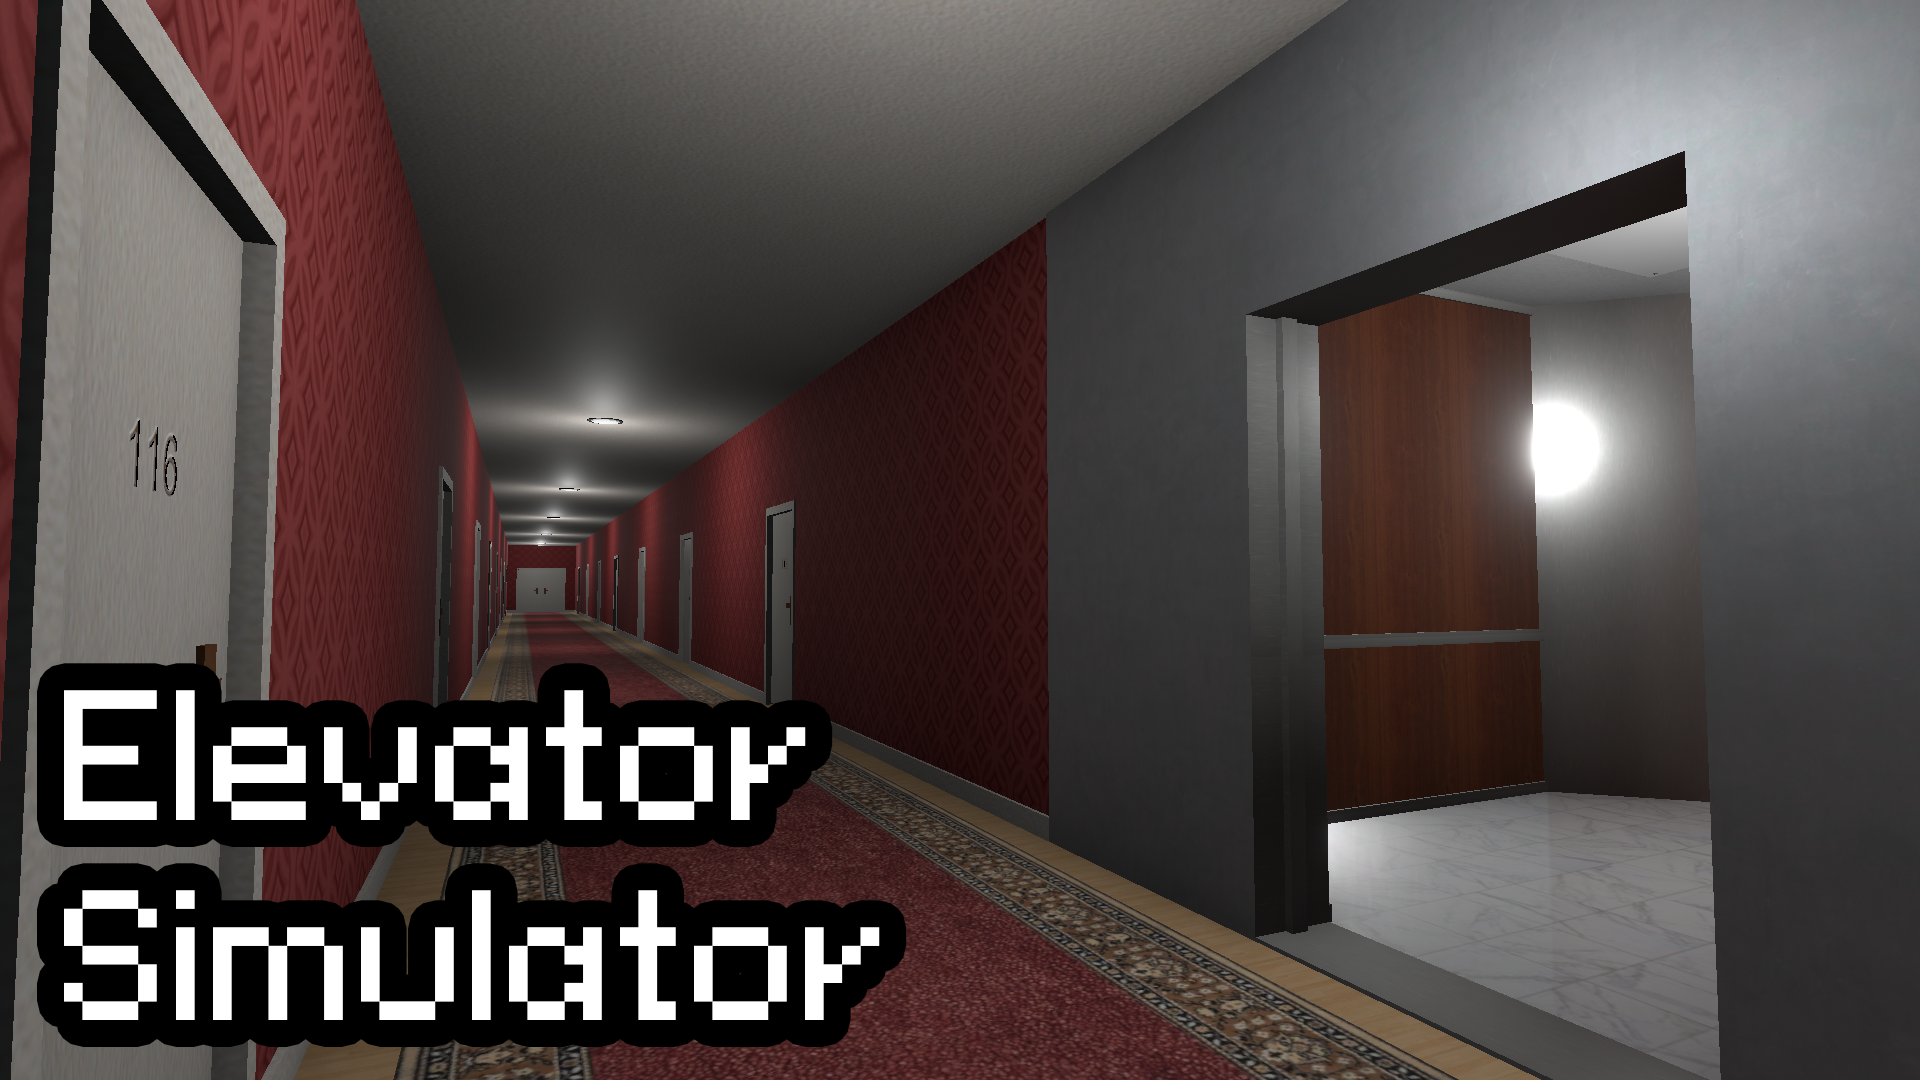 Elevator Simulator